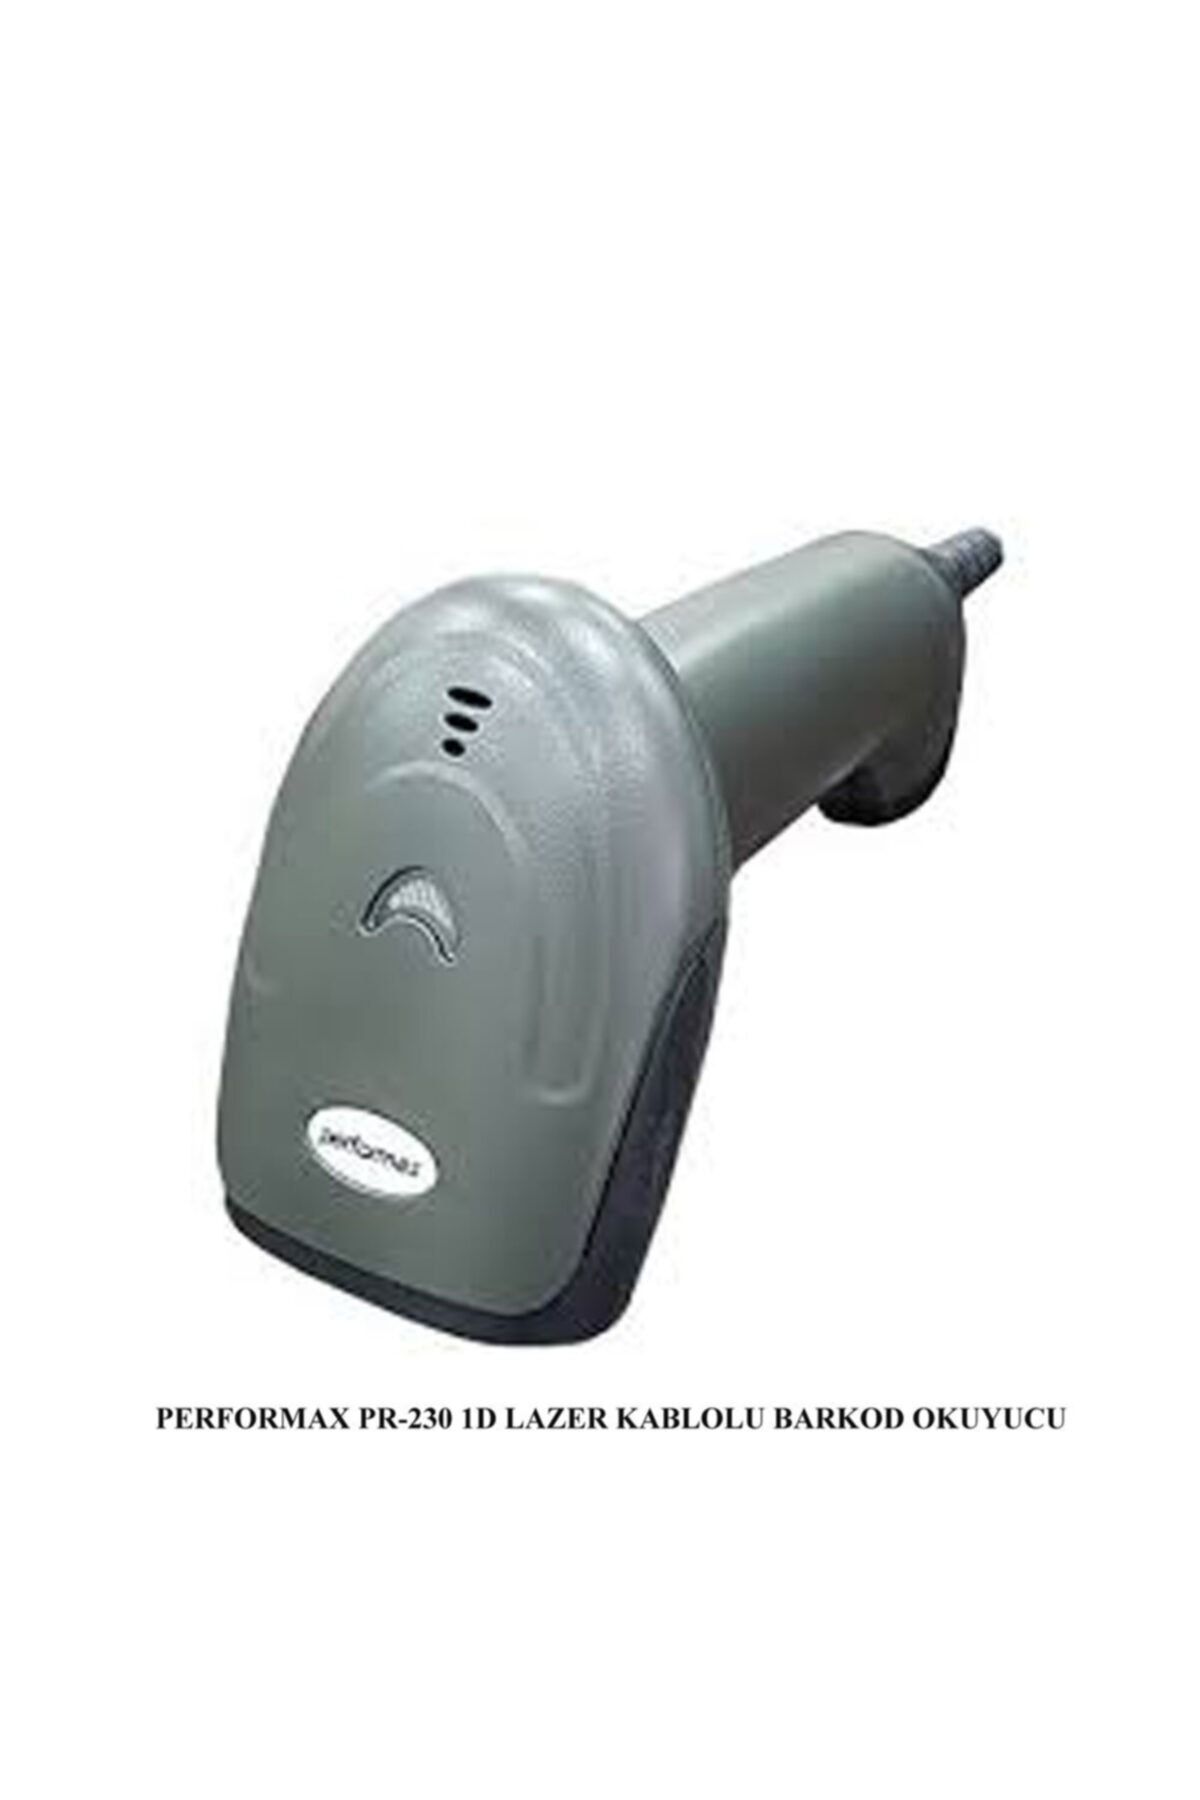 Performax Pr-230 1d Lazer Kablolu Barkod Okuyucu